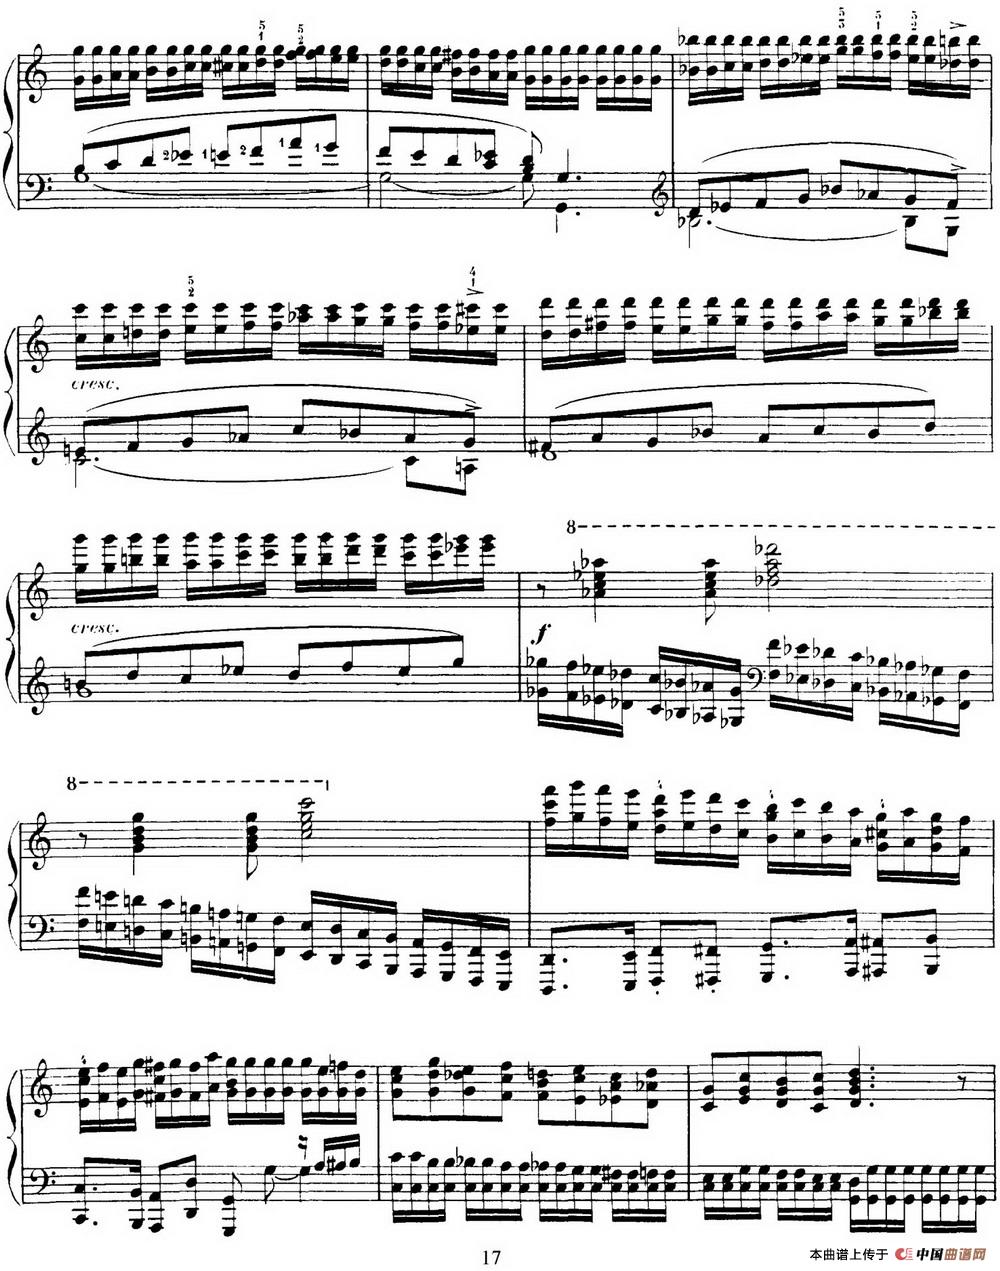 15 Etudes de Virtuosité Op.72 No.4 （十五首钢琴练习曲之四）(1)_017.jpg